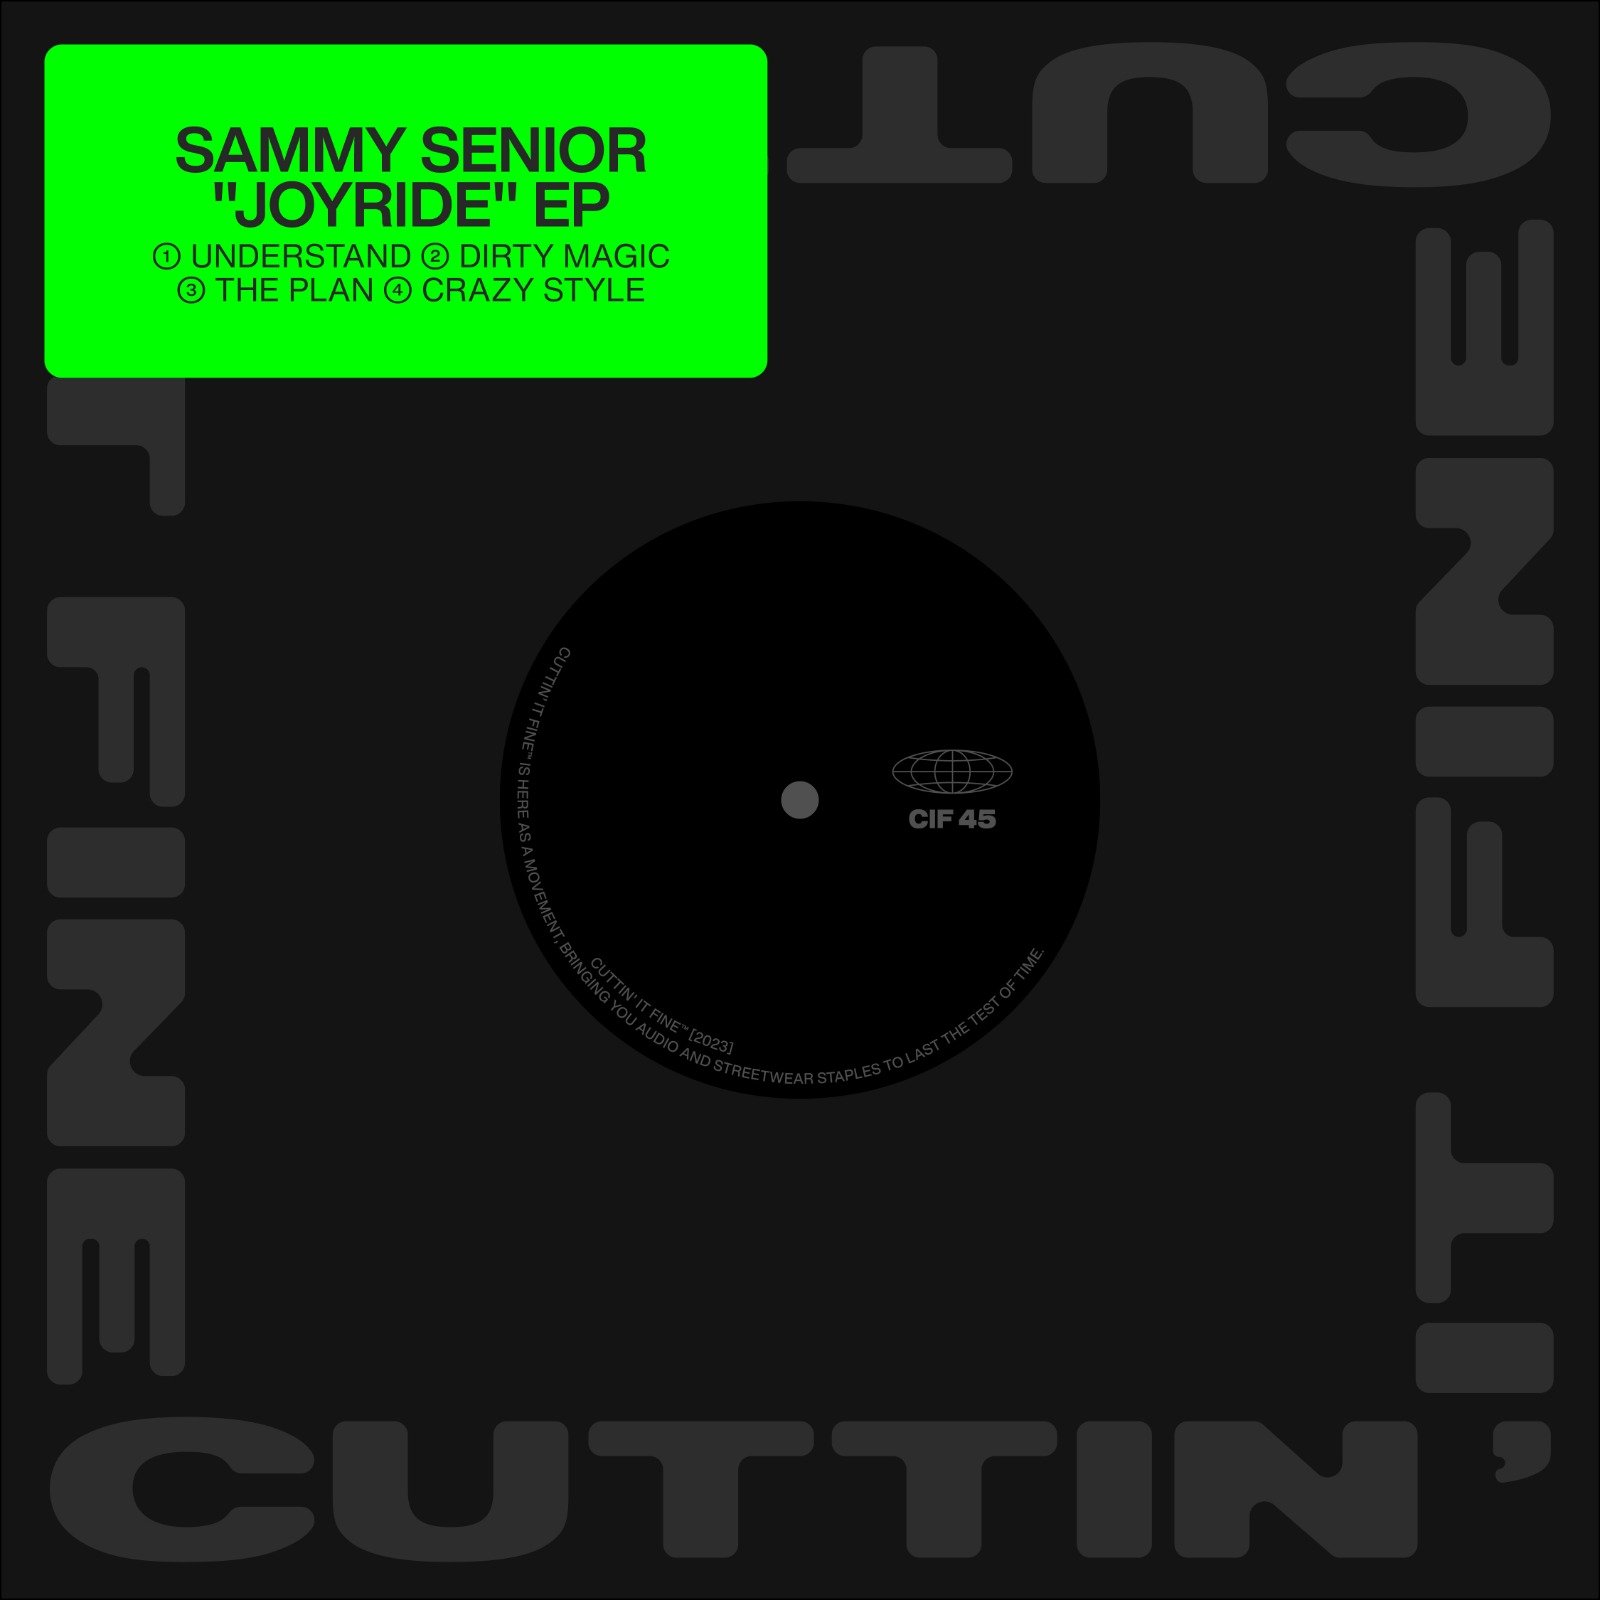 CiF45 Sammy Senior - Joyride EP Artwork.jpg